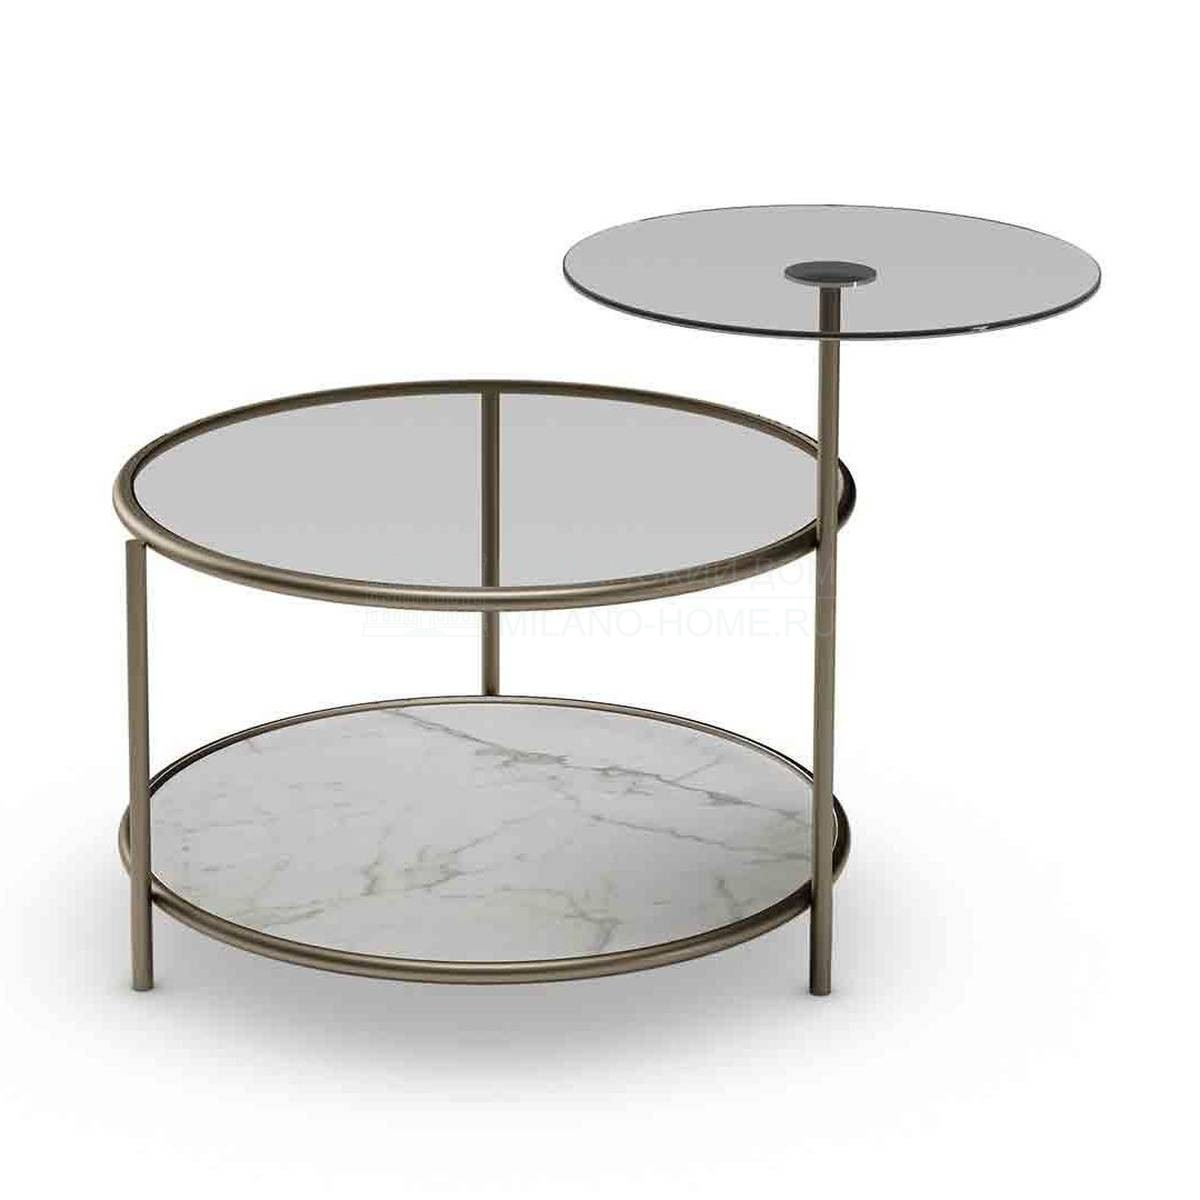 Кофейный столик Egeo coffee table из Италии фабрики REFLEX ANGELO